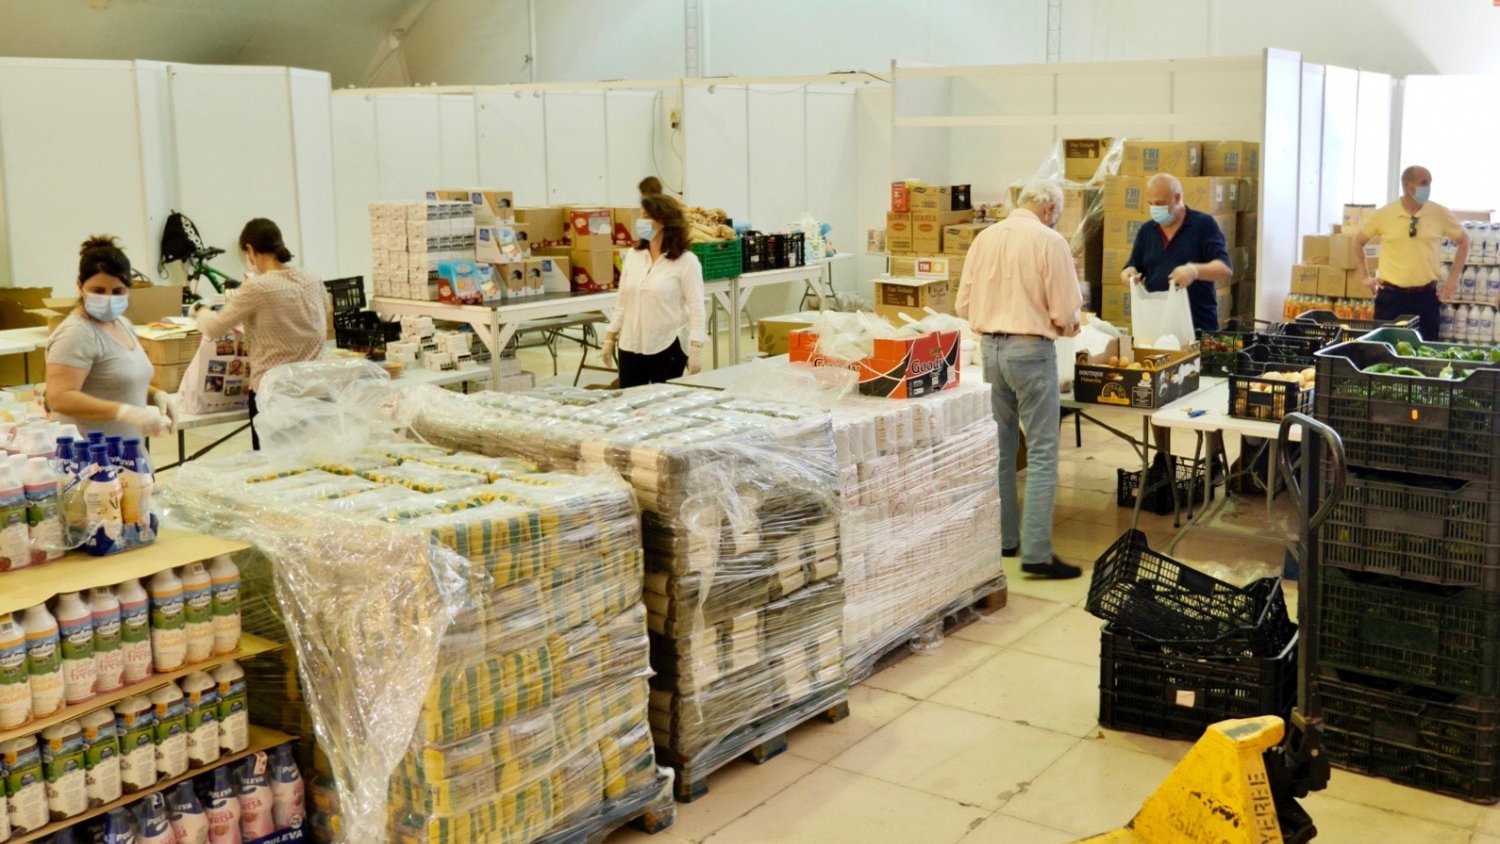 Estepona destina 250.000 euros en ayudas económicas para familias vulnerables en la pandemia